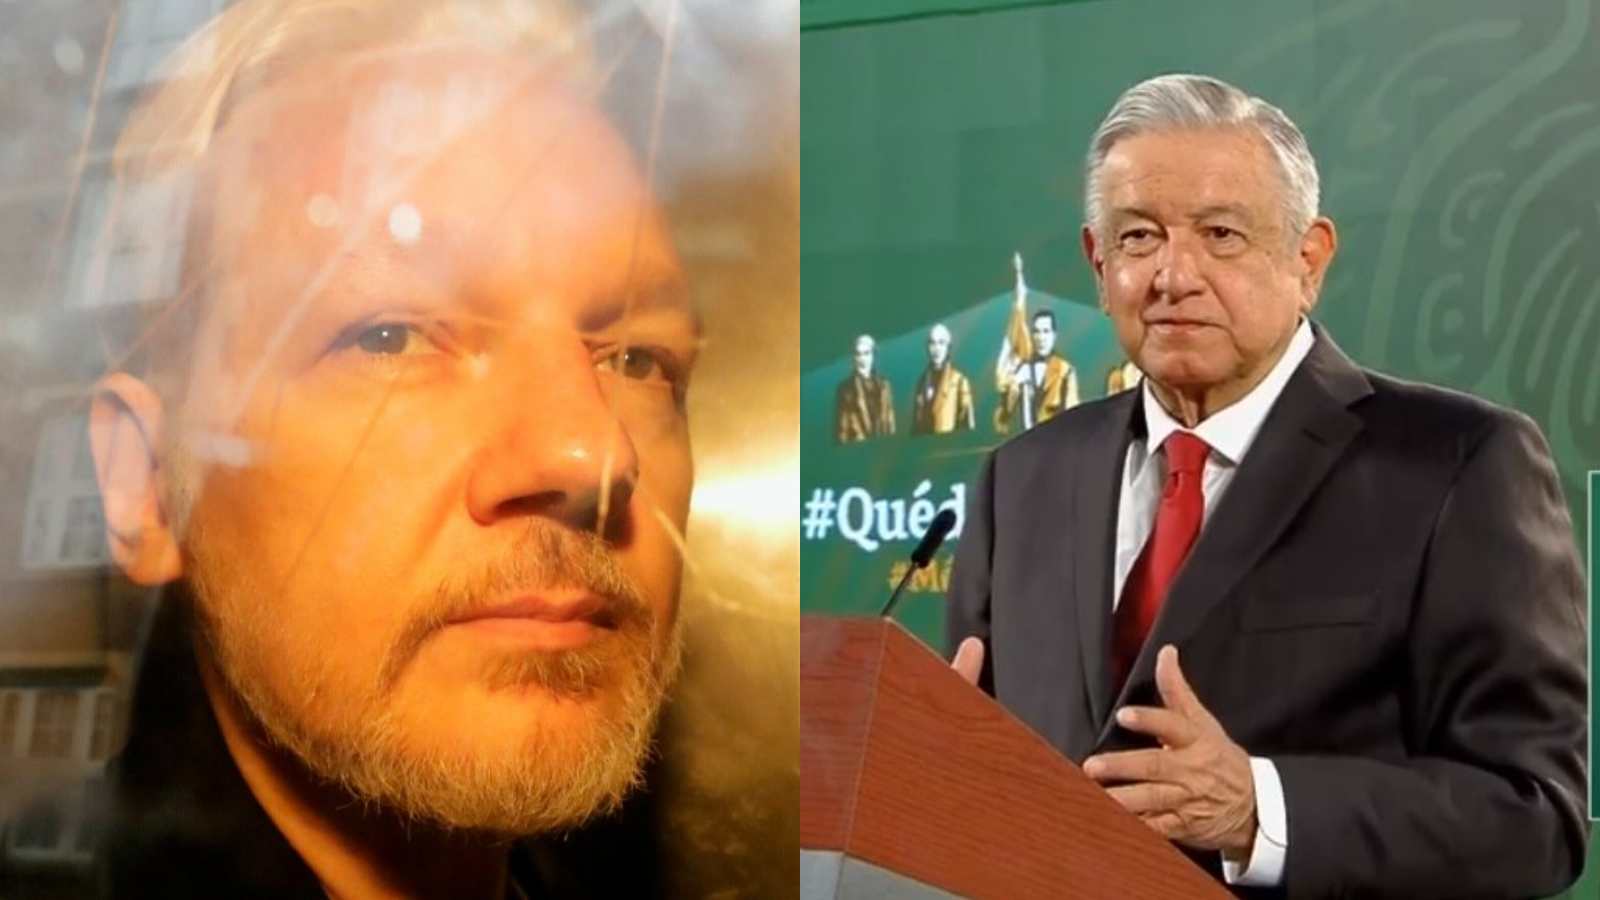 presidente de mexico lopez obrador brinda asilo politico a julian assange